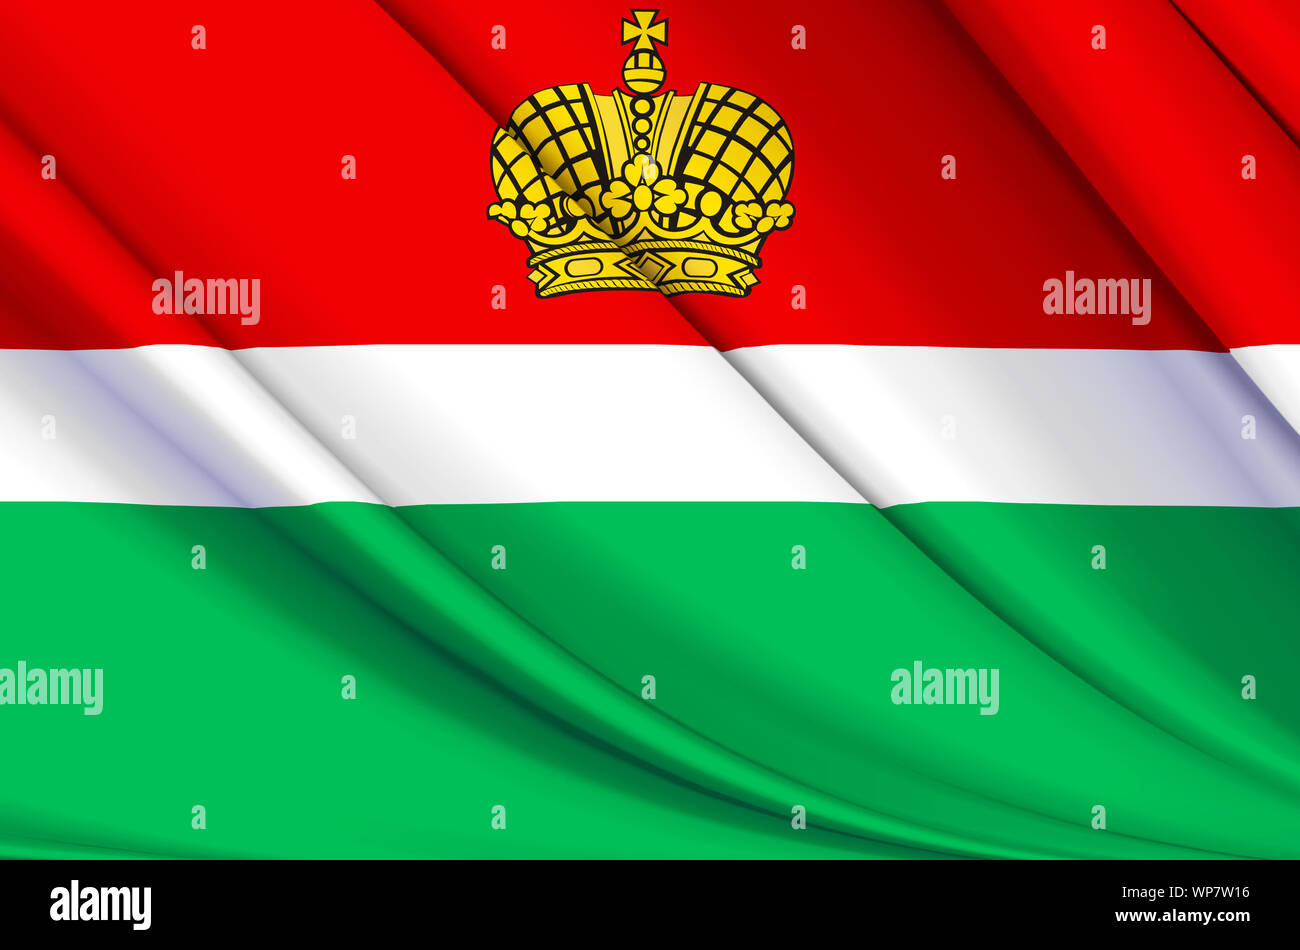 Kaluga waving flag illustration. Régions de la Russie. Parfait pour l'utilisation d'arrière-plan et la texture. Banque D'Images